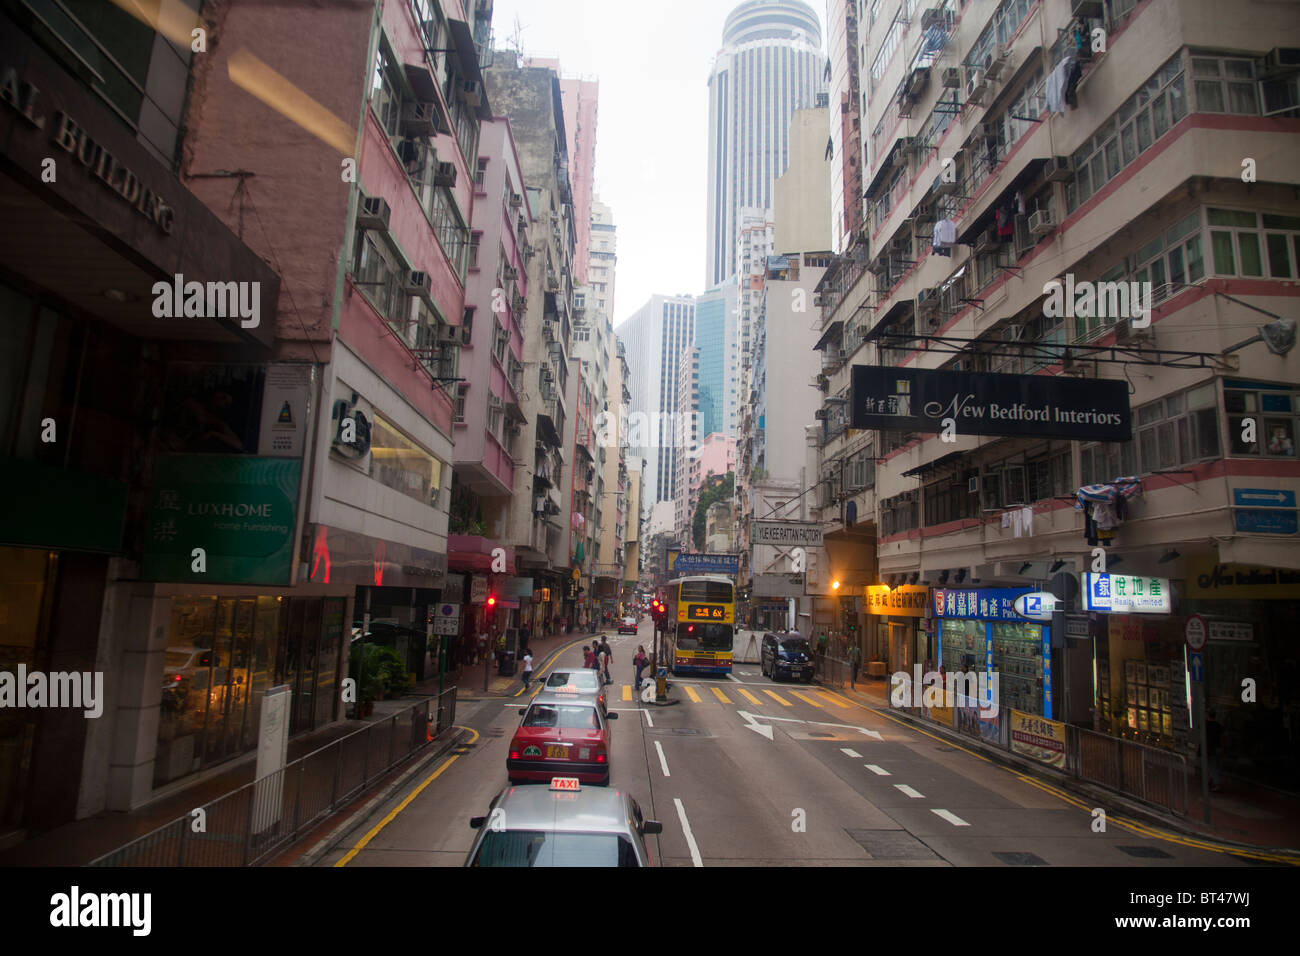 Rue typique de Kowloon, Hong Kong, des enseignes éclairées light the way pour des clients Banque D'Images